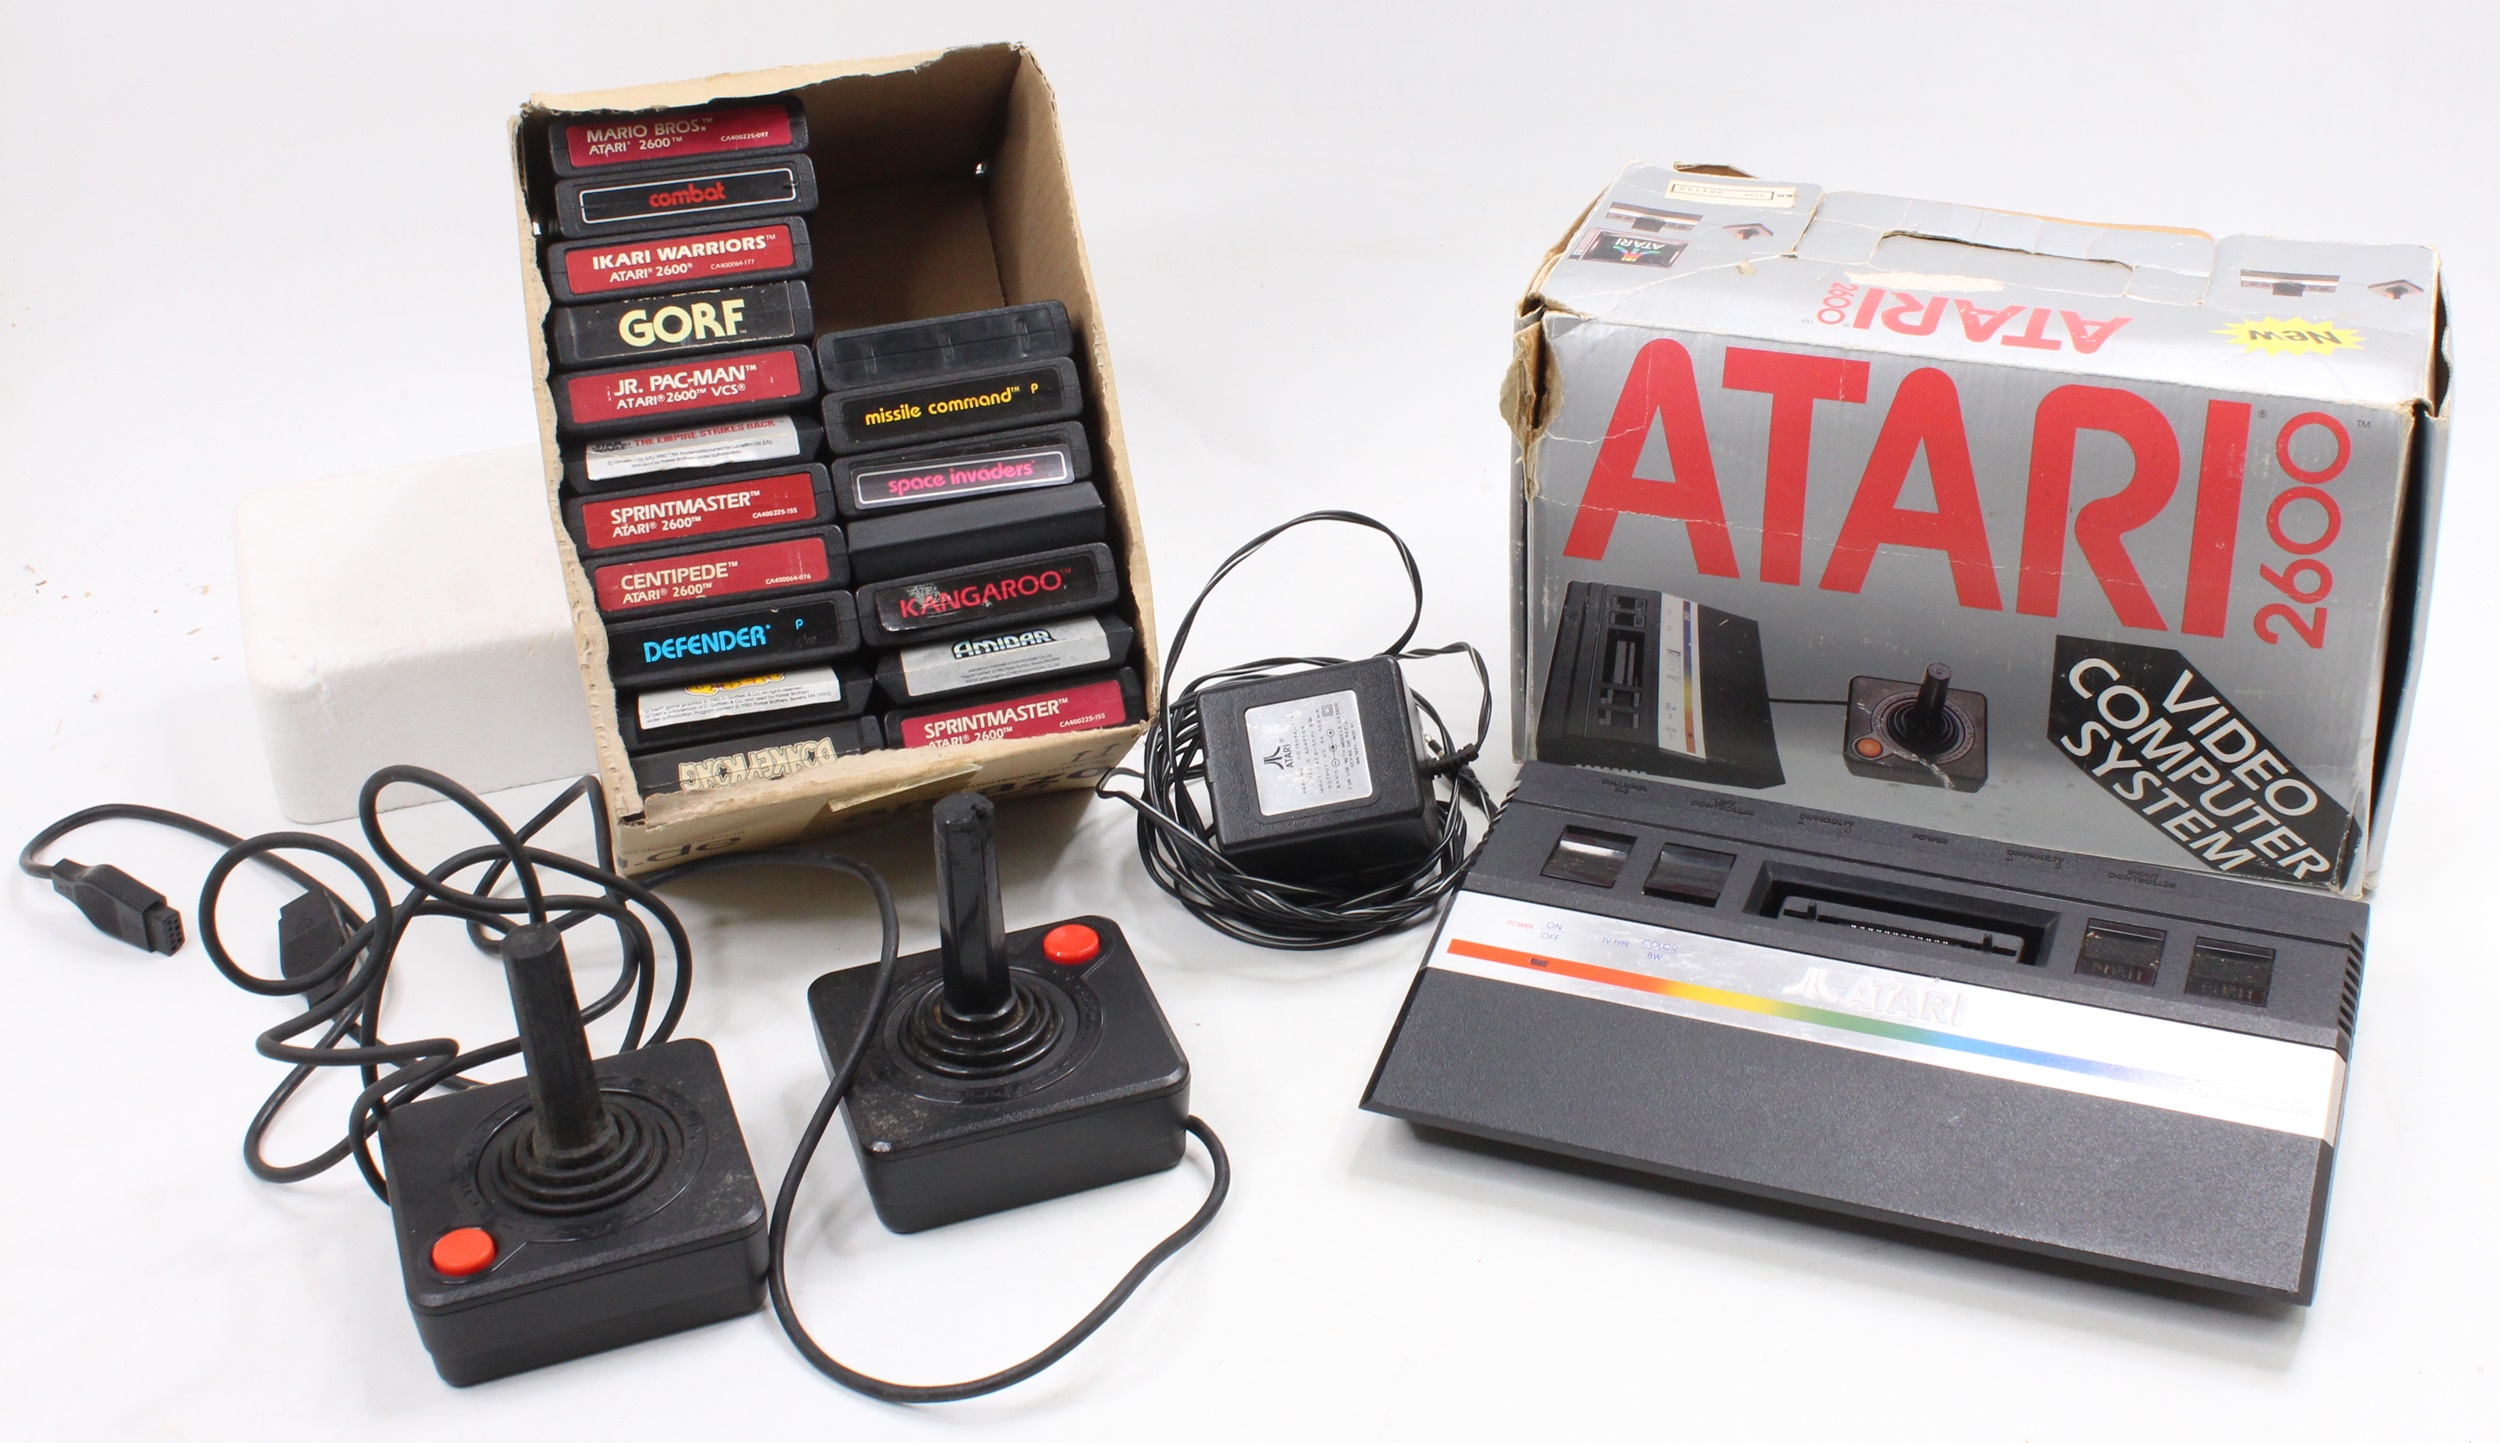 Atari video computer system - Electronics